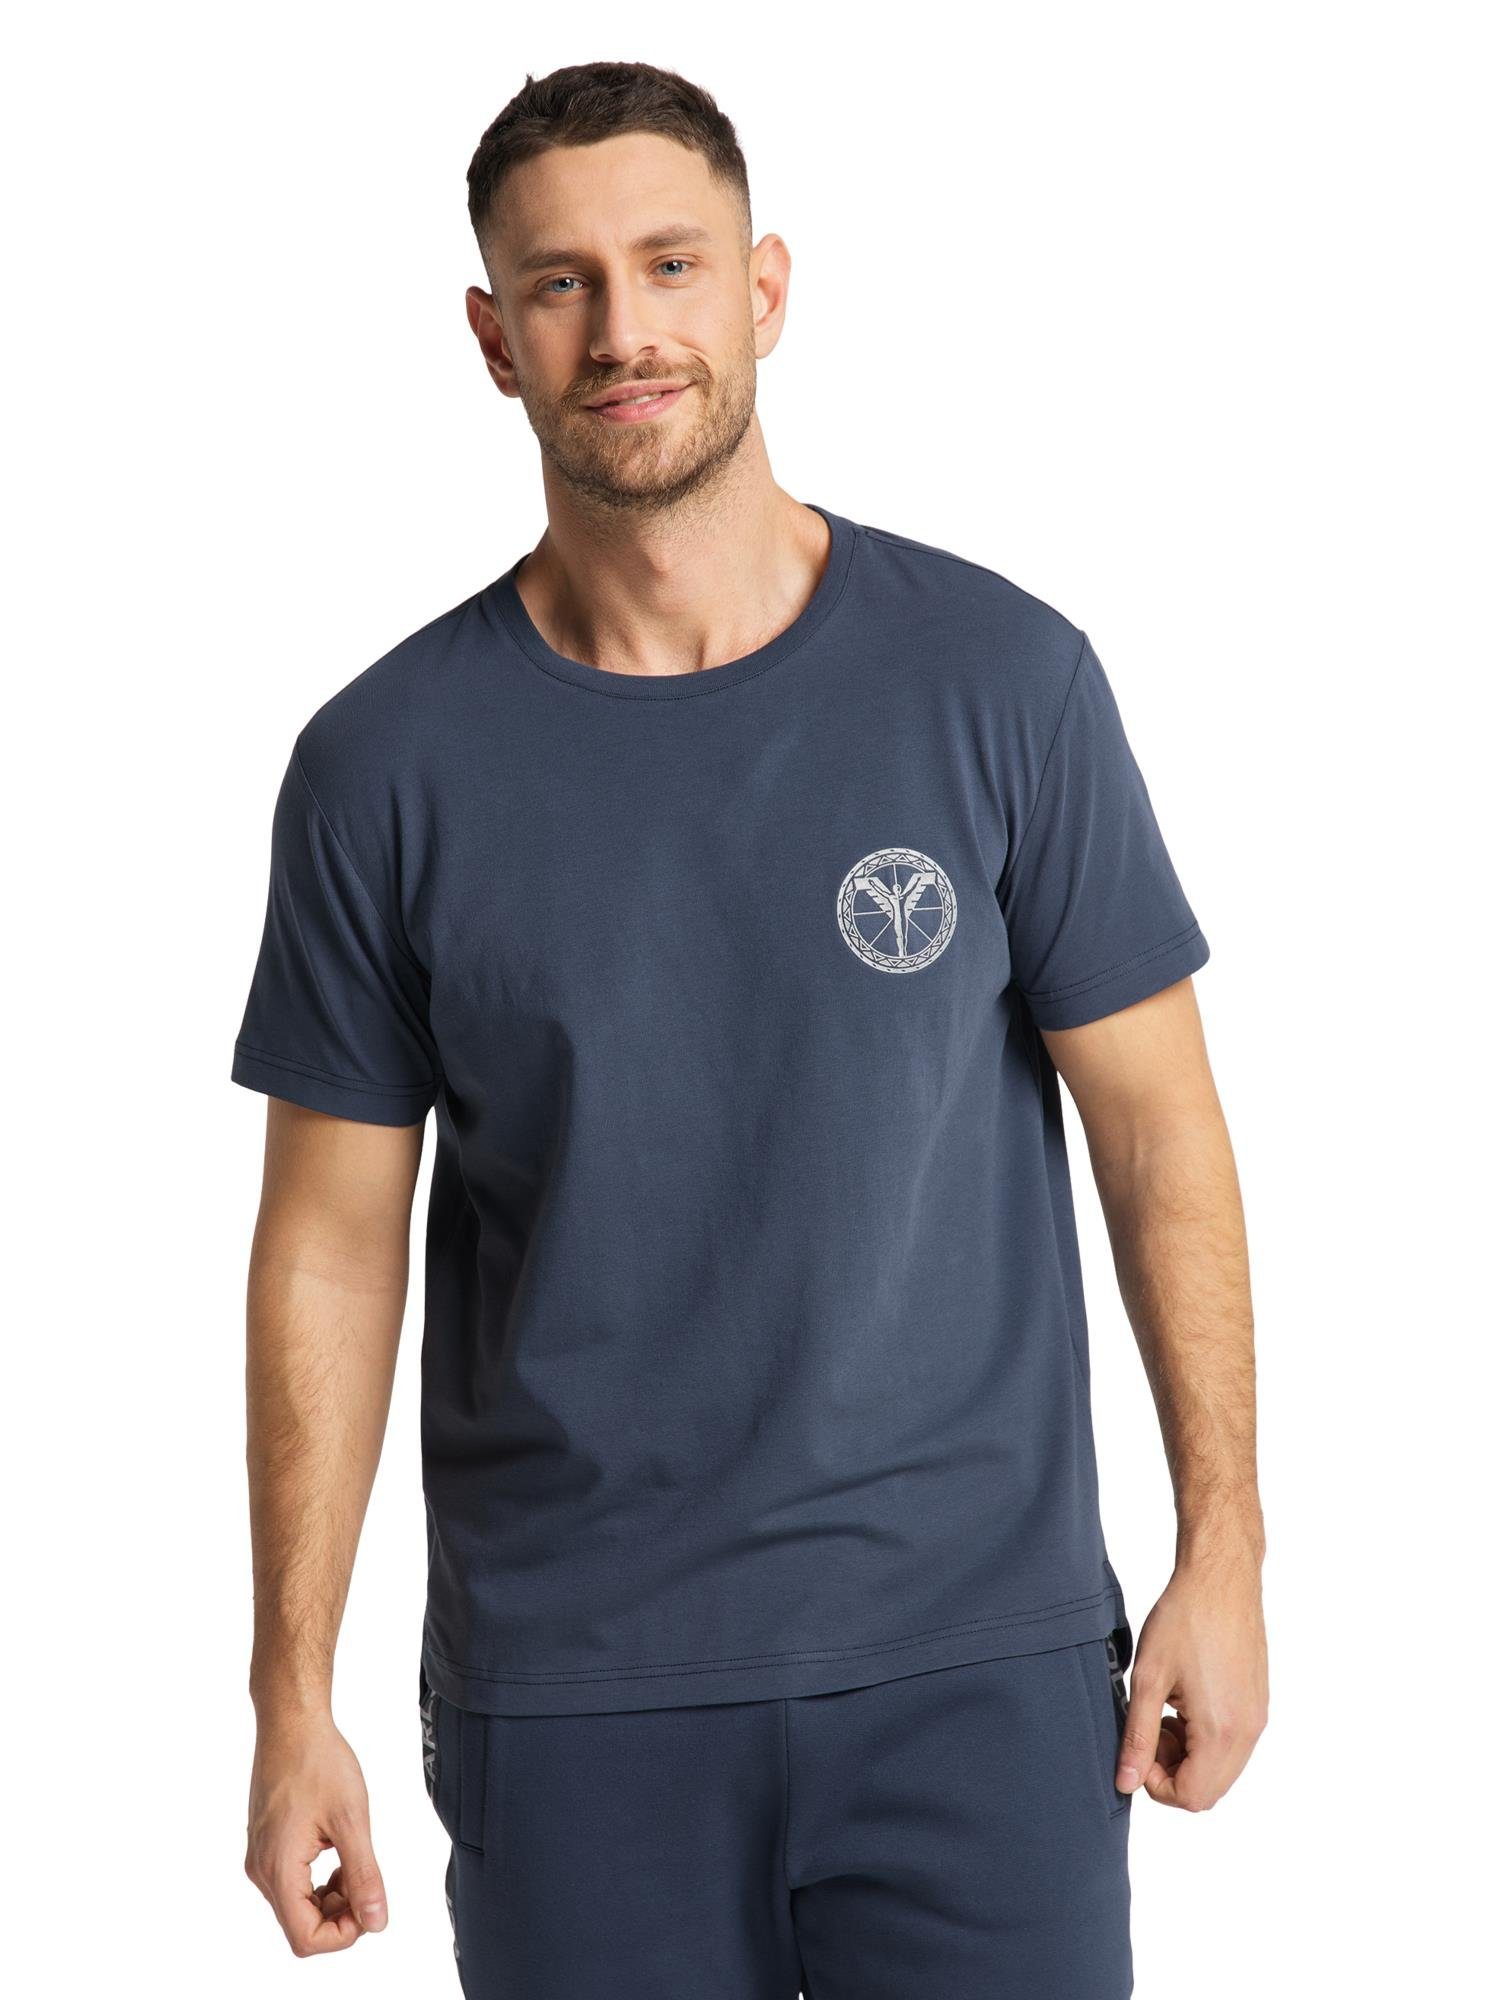 T-Shirt CARLO COLUCCI Navy Campanella